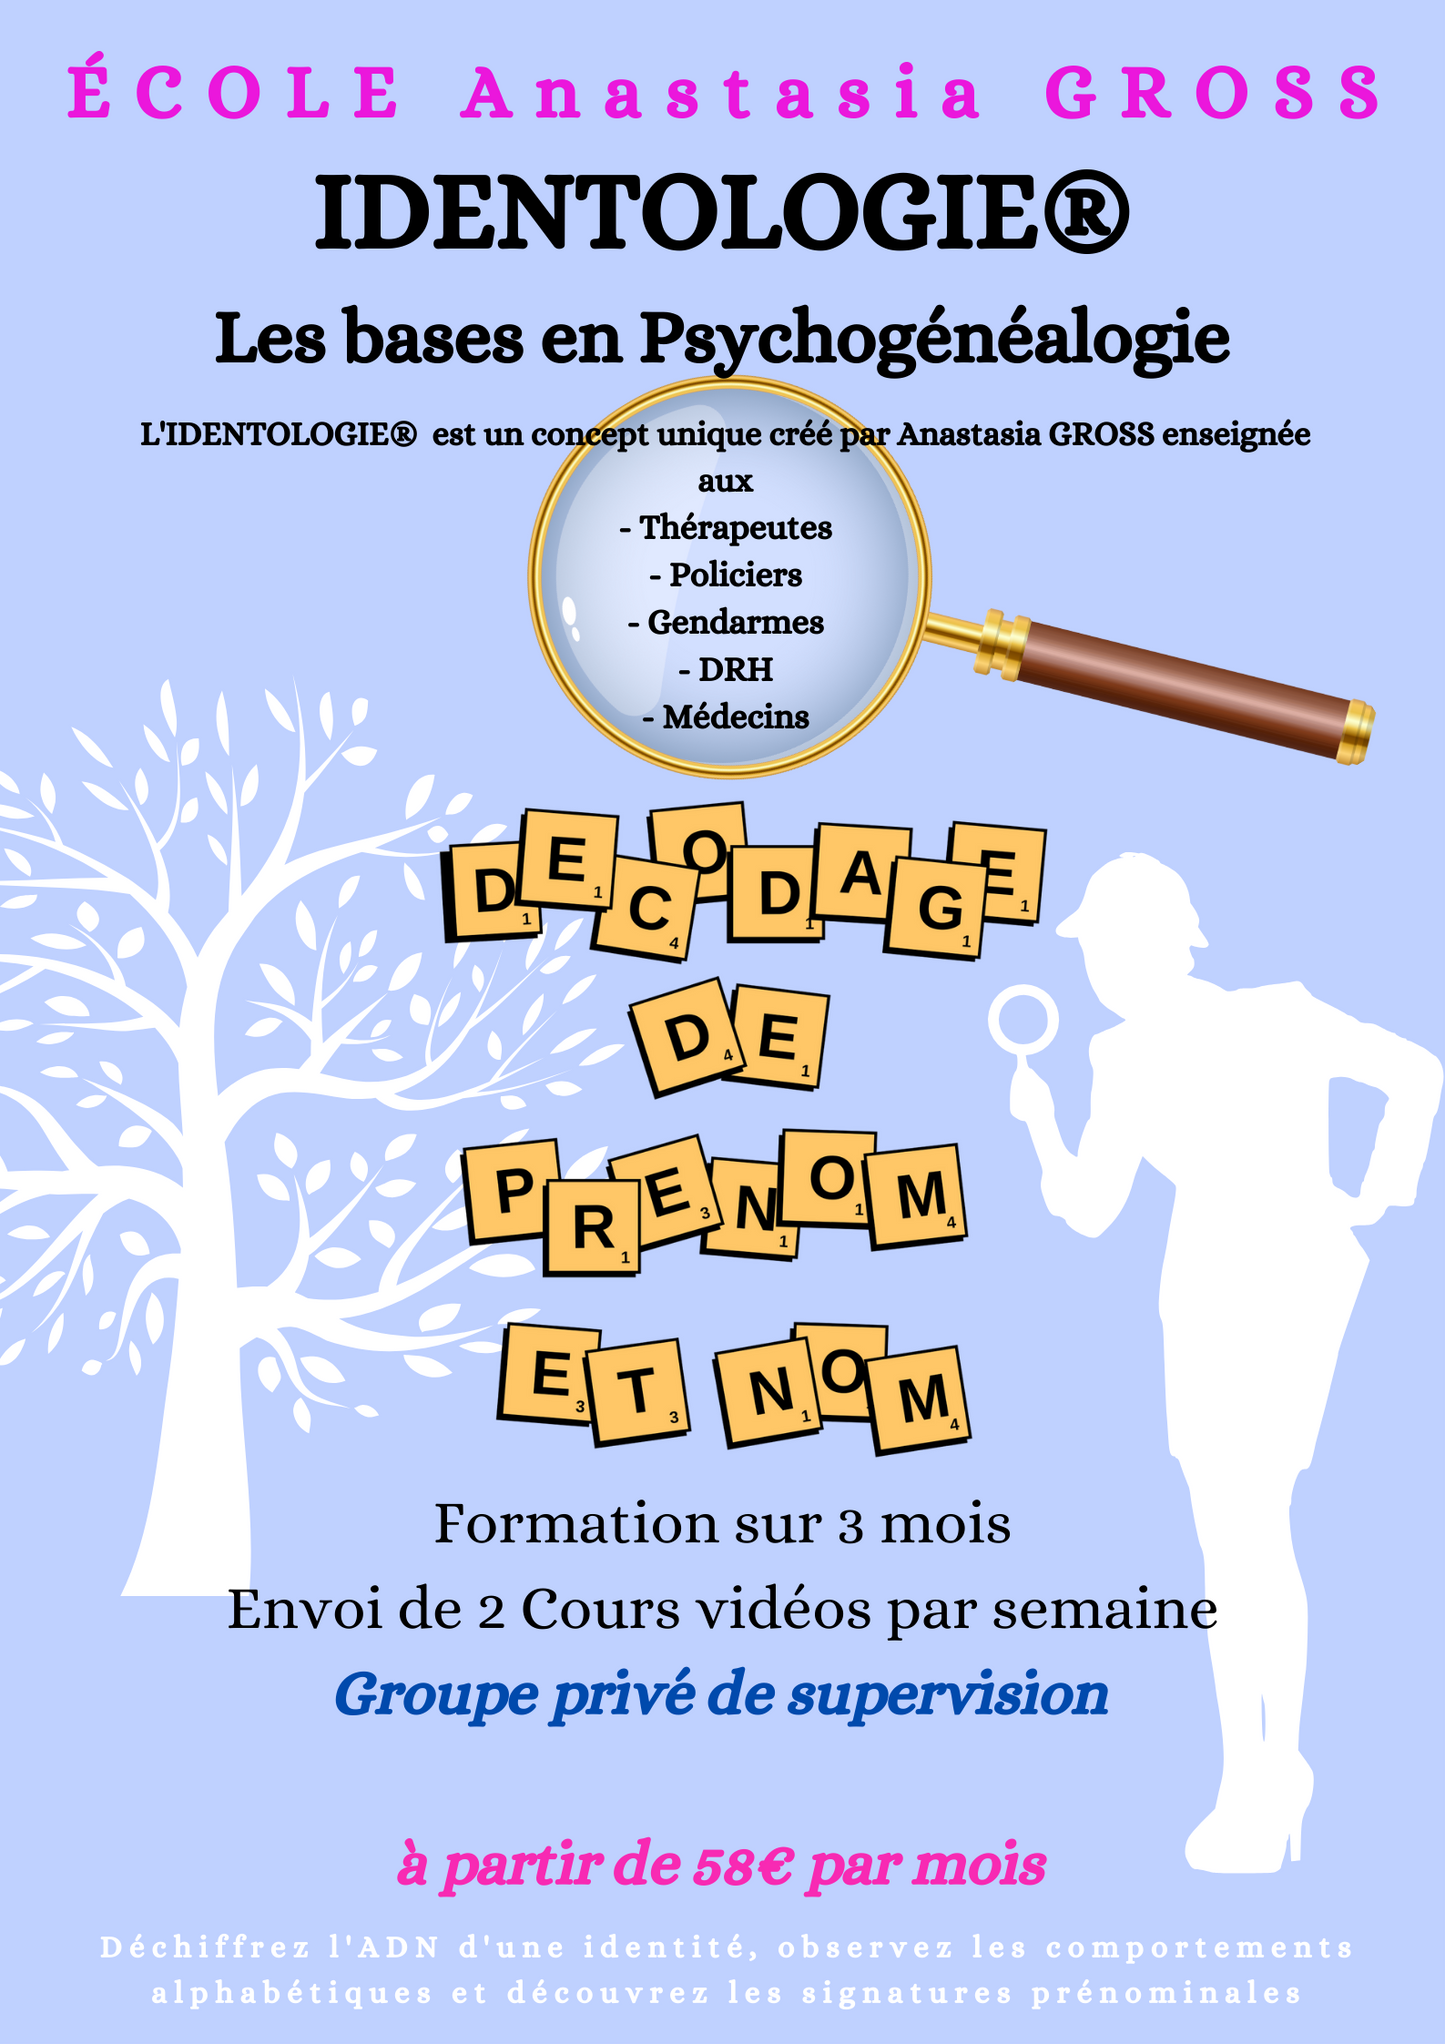 Cursus Autonome - Devenez Praticien en IDENTOLOGIE® - Les Bases du Profiling identitaire - Domaine Psychogénéalogie